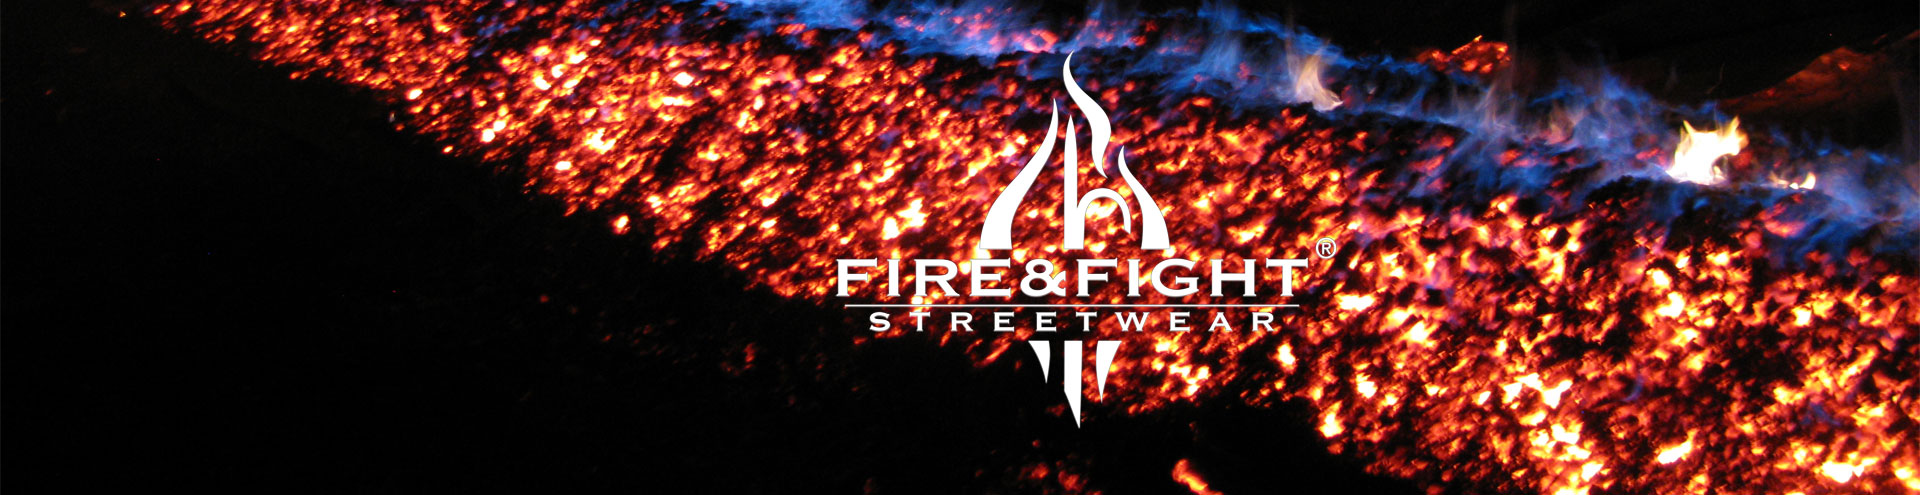 FIRE & FIGHT Streewear®